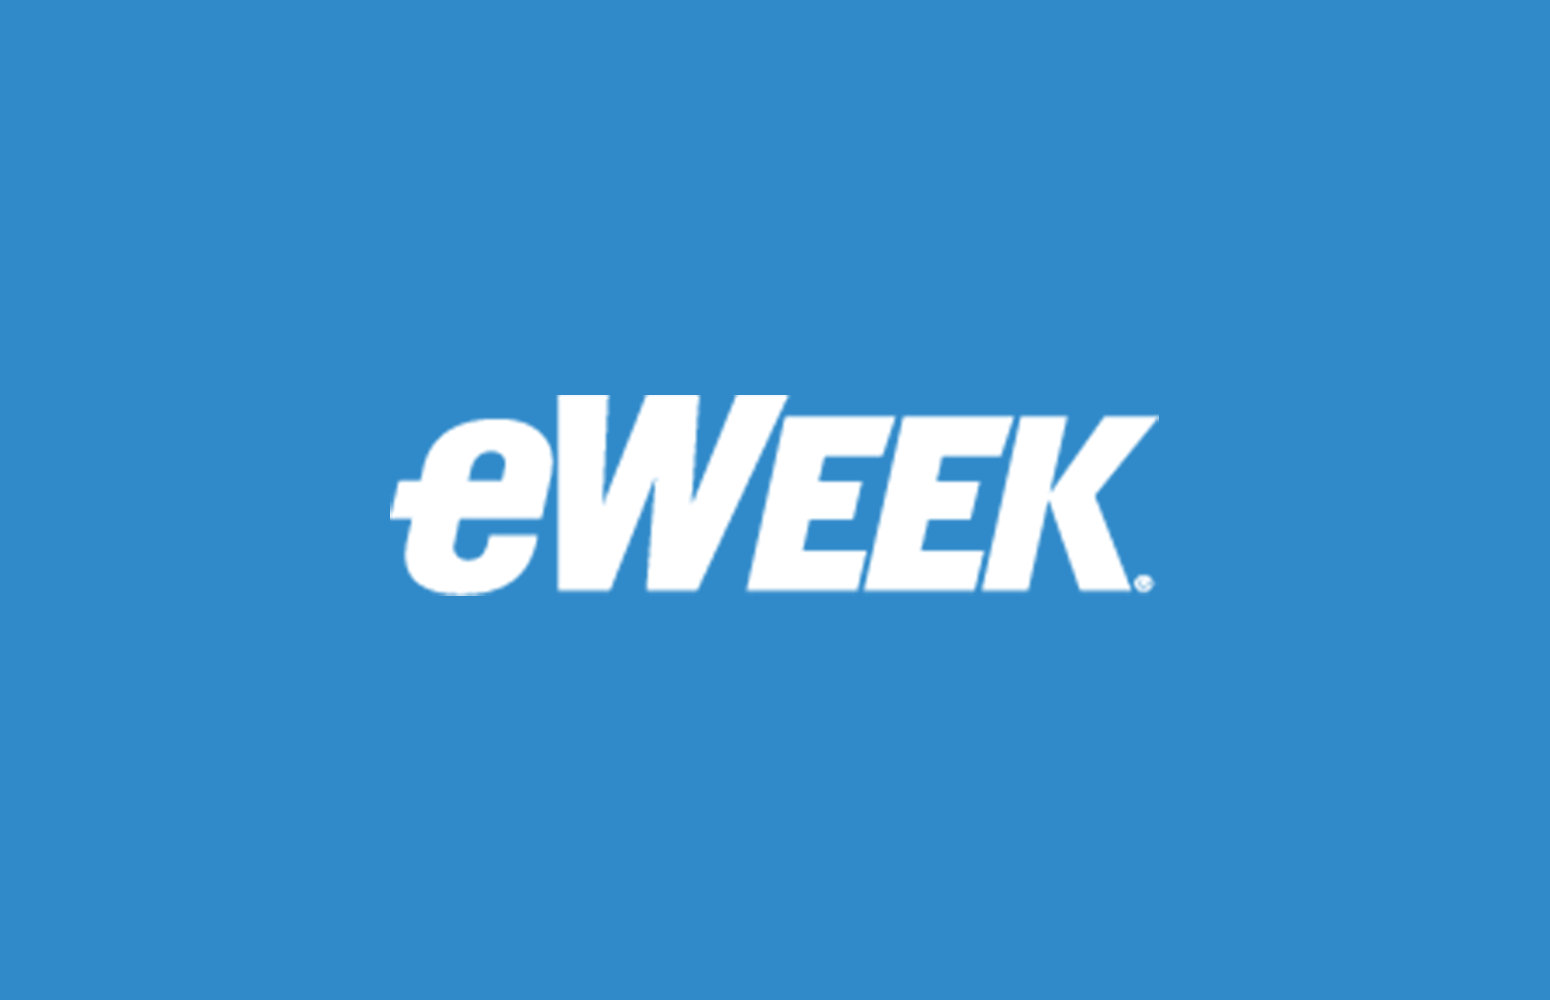 eWeek Logo - News Stand Alone Eweek Logo W